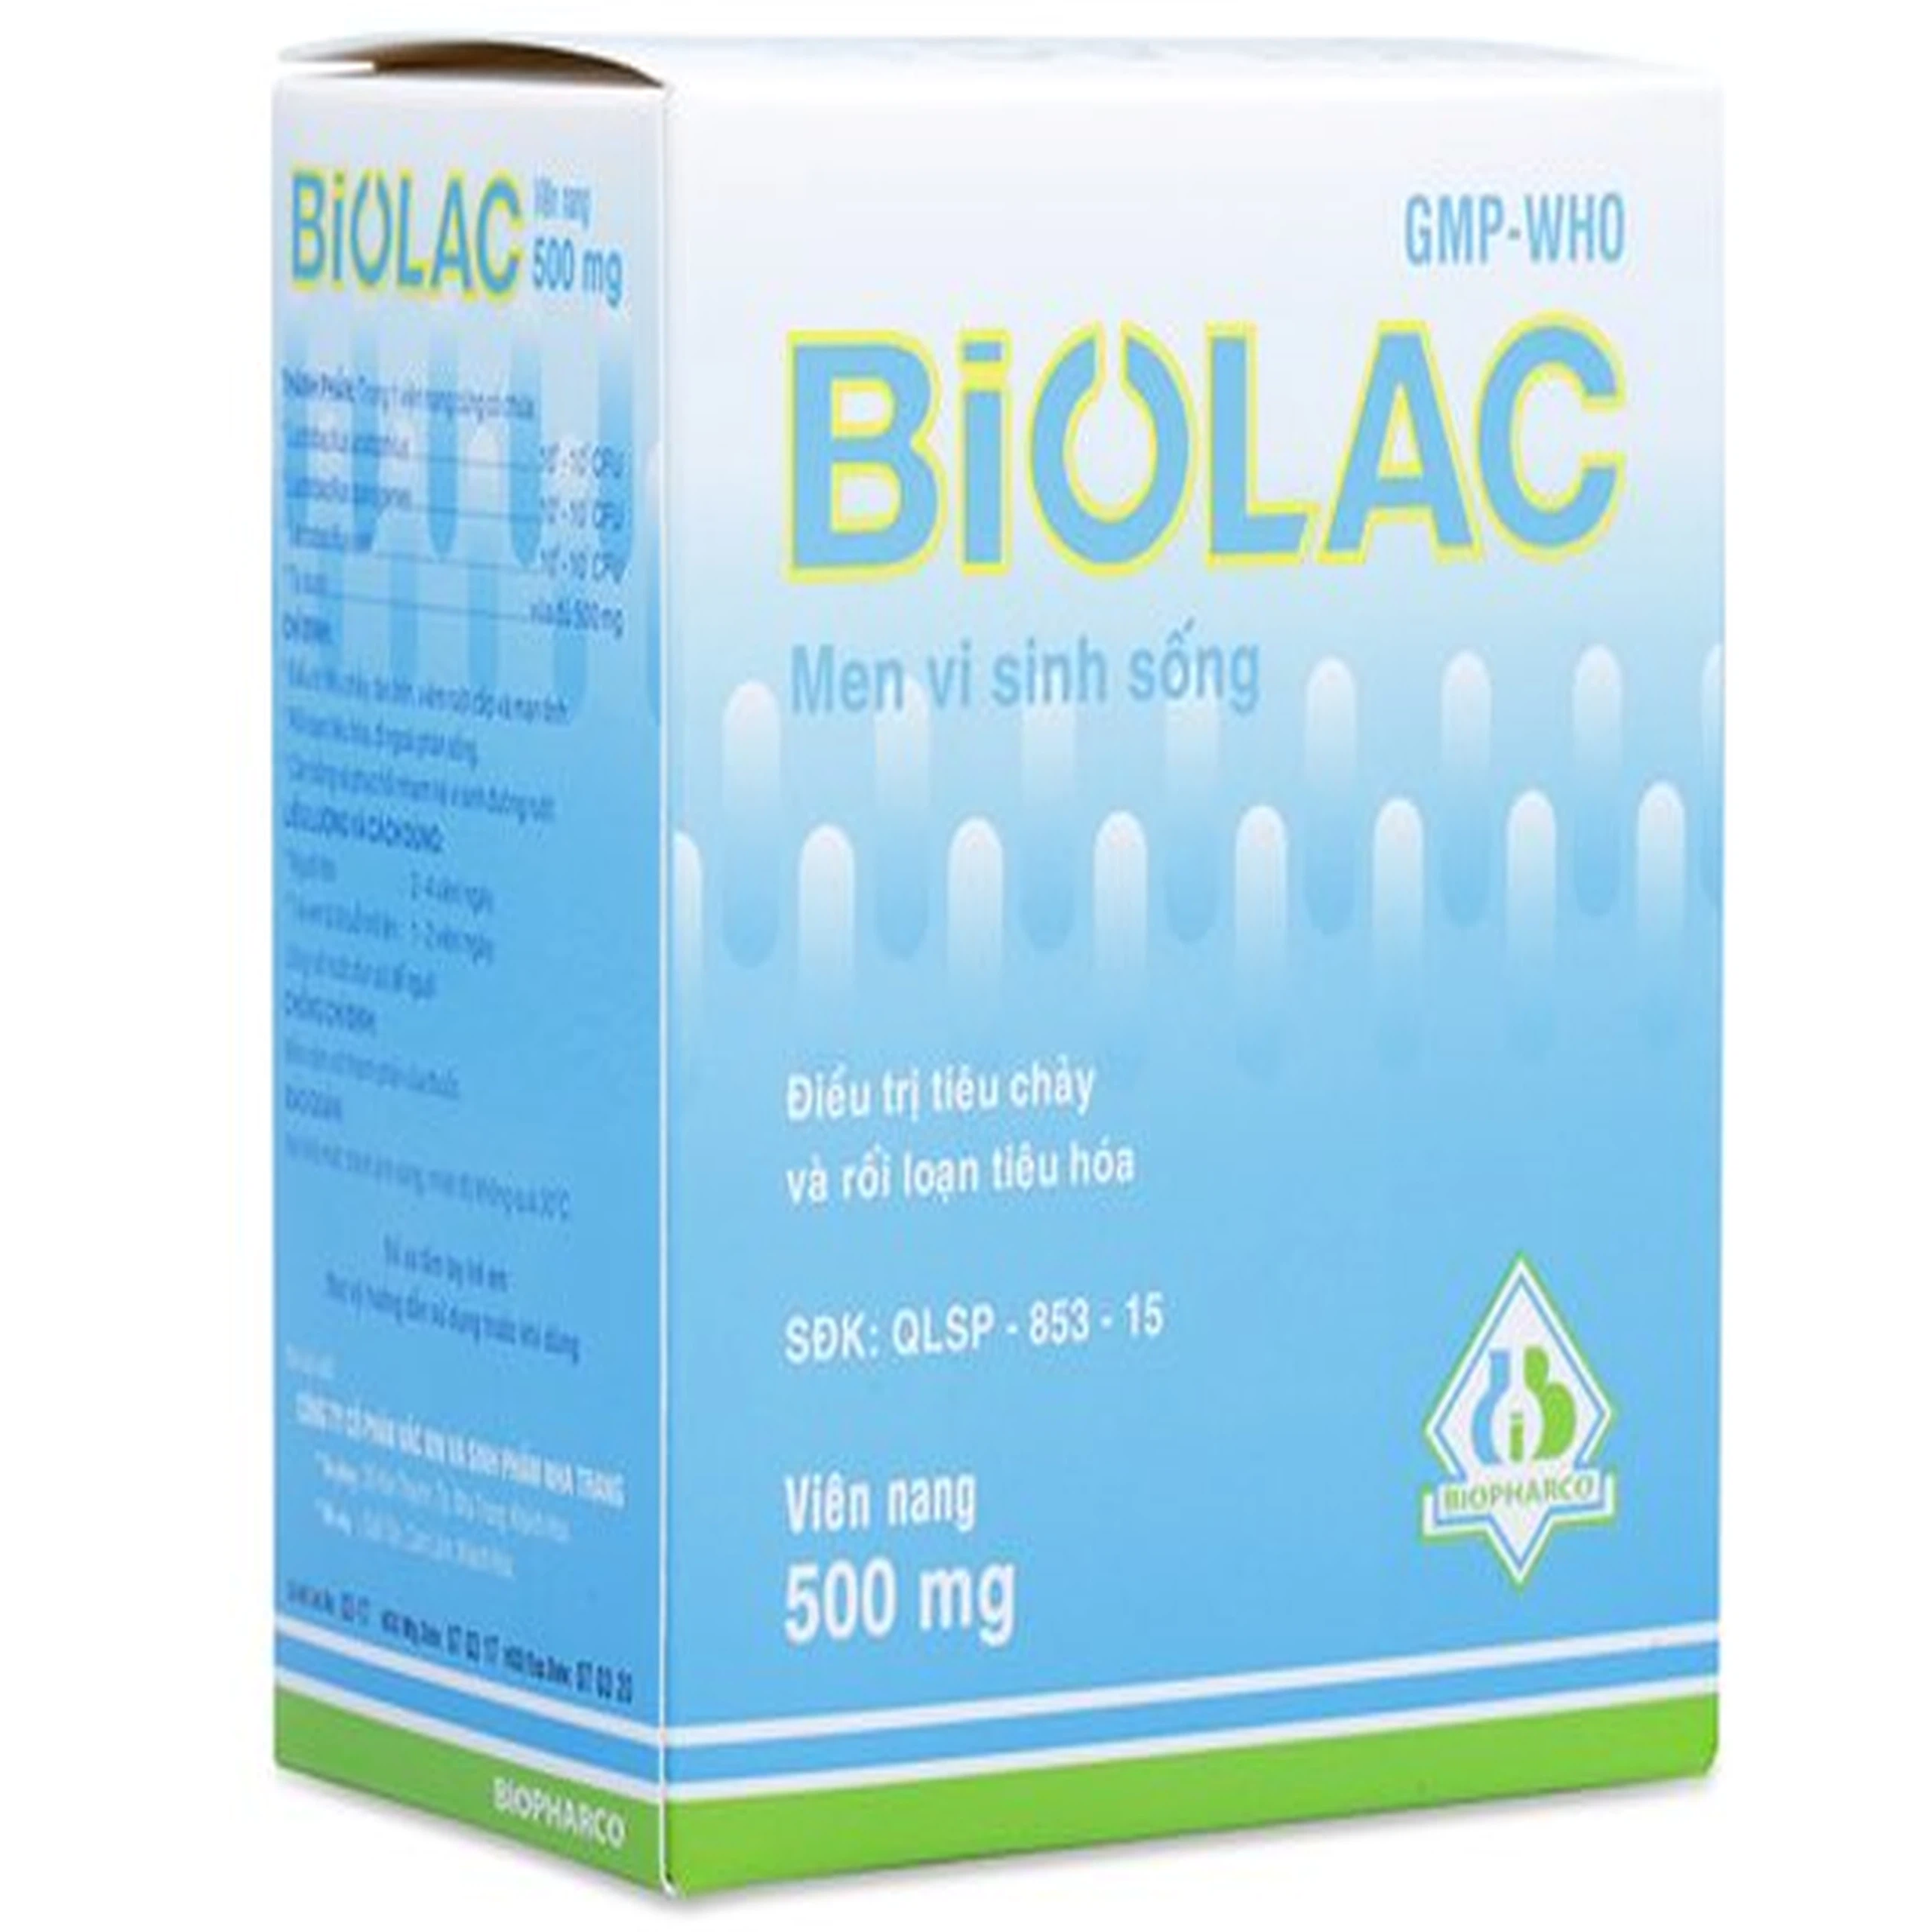 Men vi sinh sống Biolac Biopharco điều trị tiêu chảy, rối loạn tiêu hóa (100 viên)